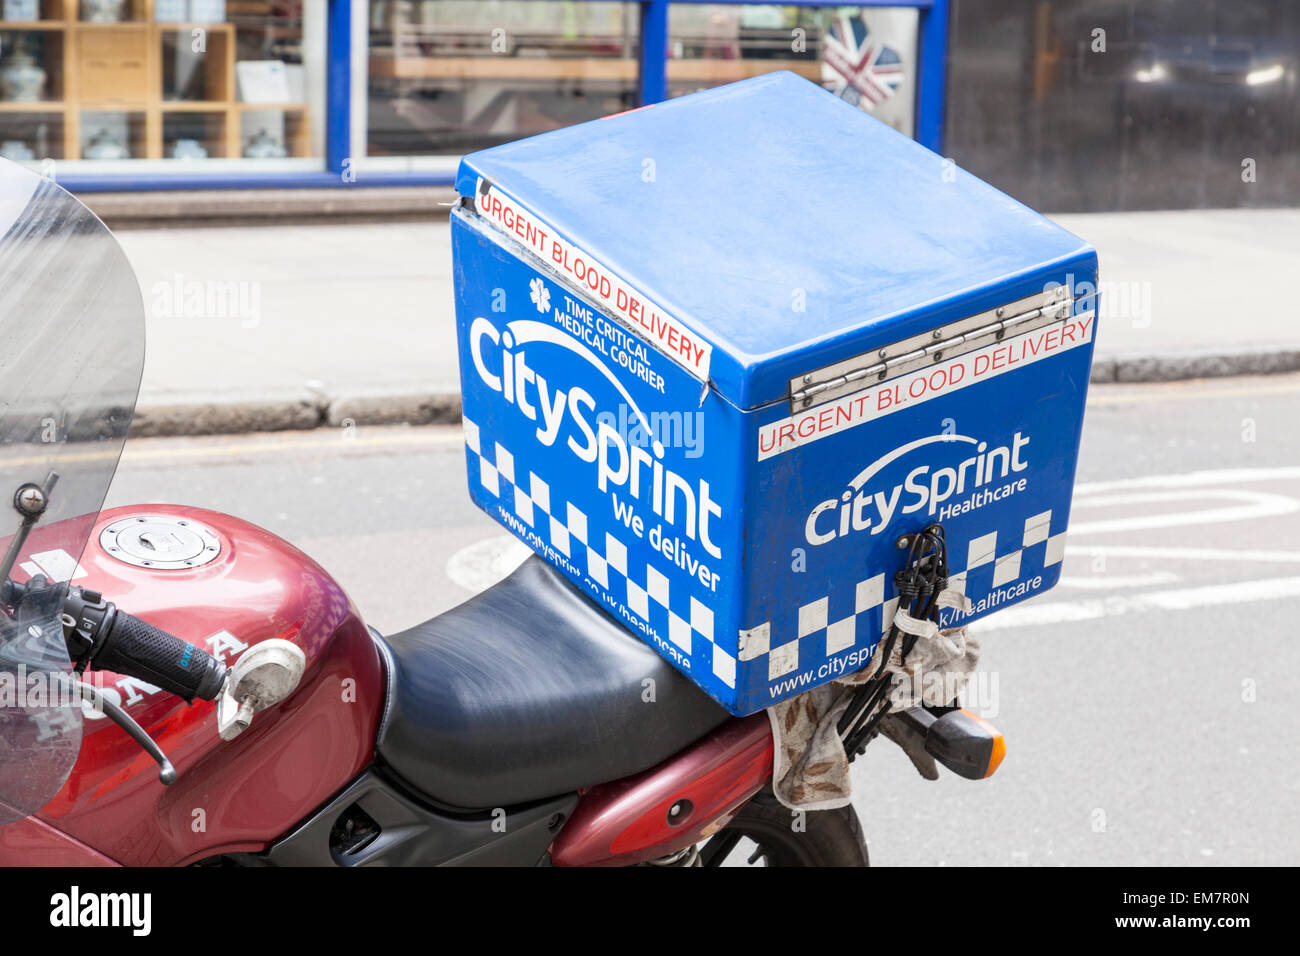 CitySprint Healthcare Motorrad verwendet für dringende Blut Lieferungen, London, England, UK Stockfoto